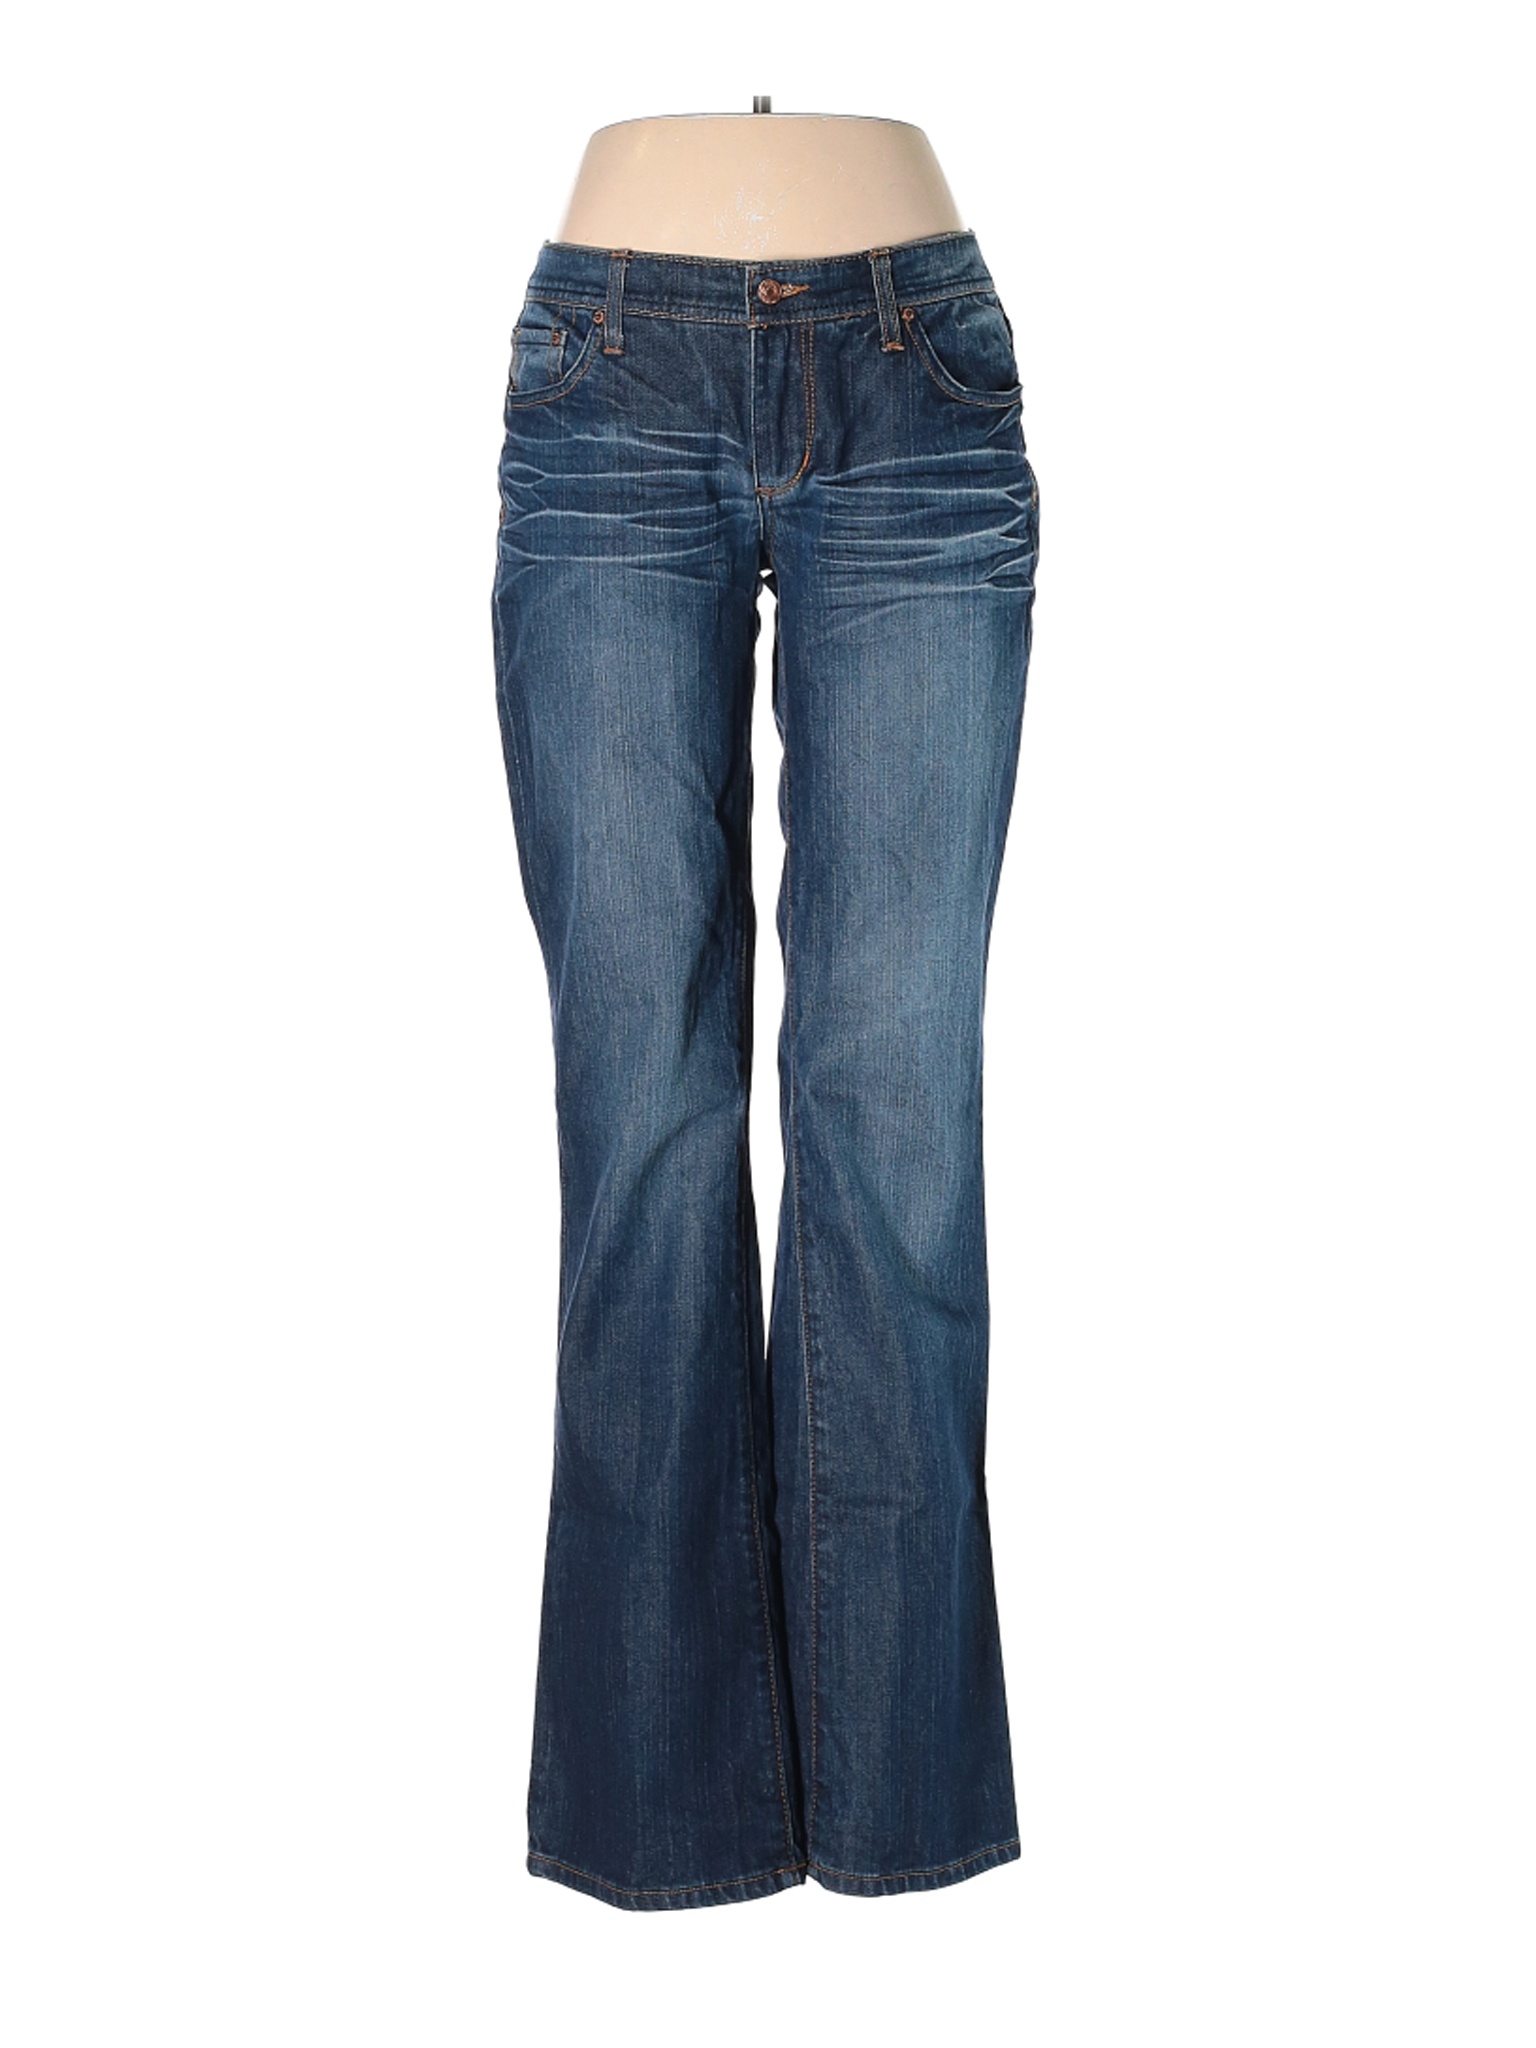 Seven7 Women Blue Jeans 32W | eBay